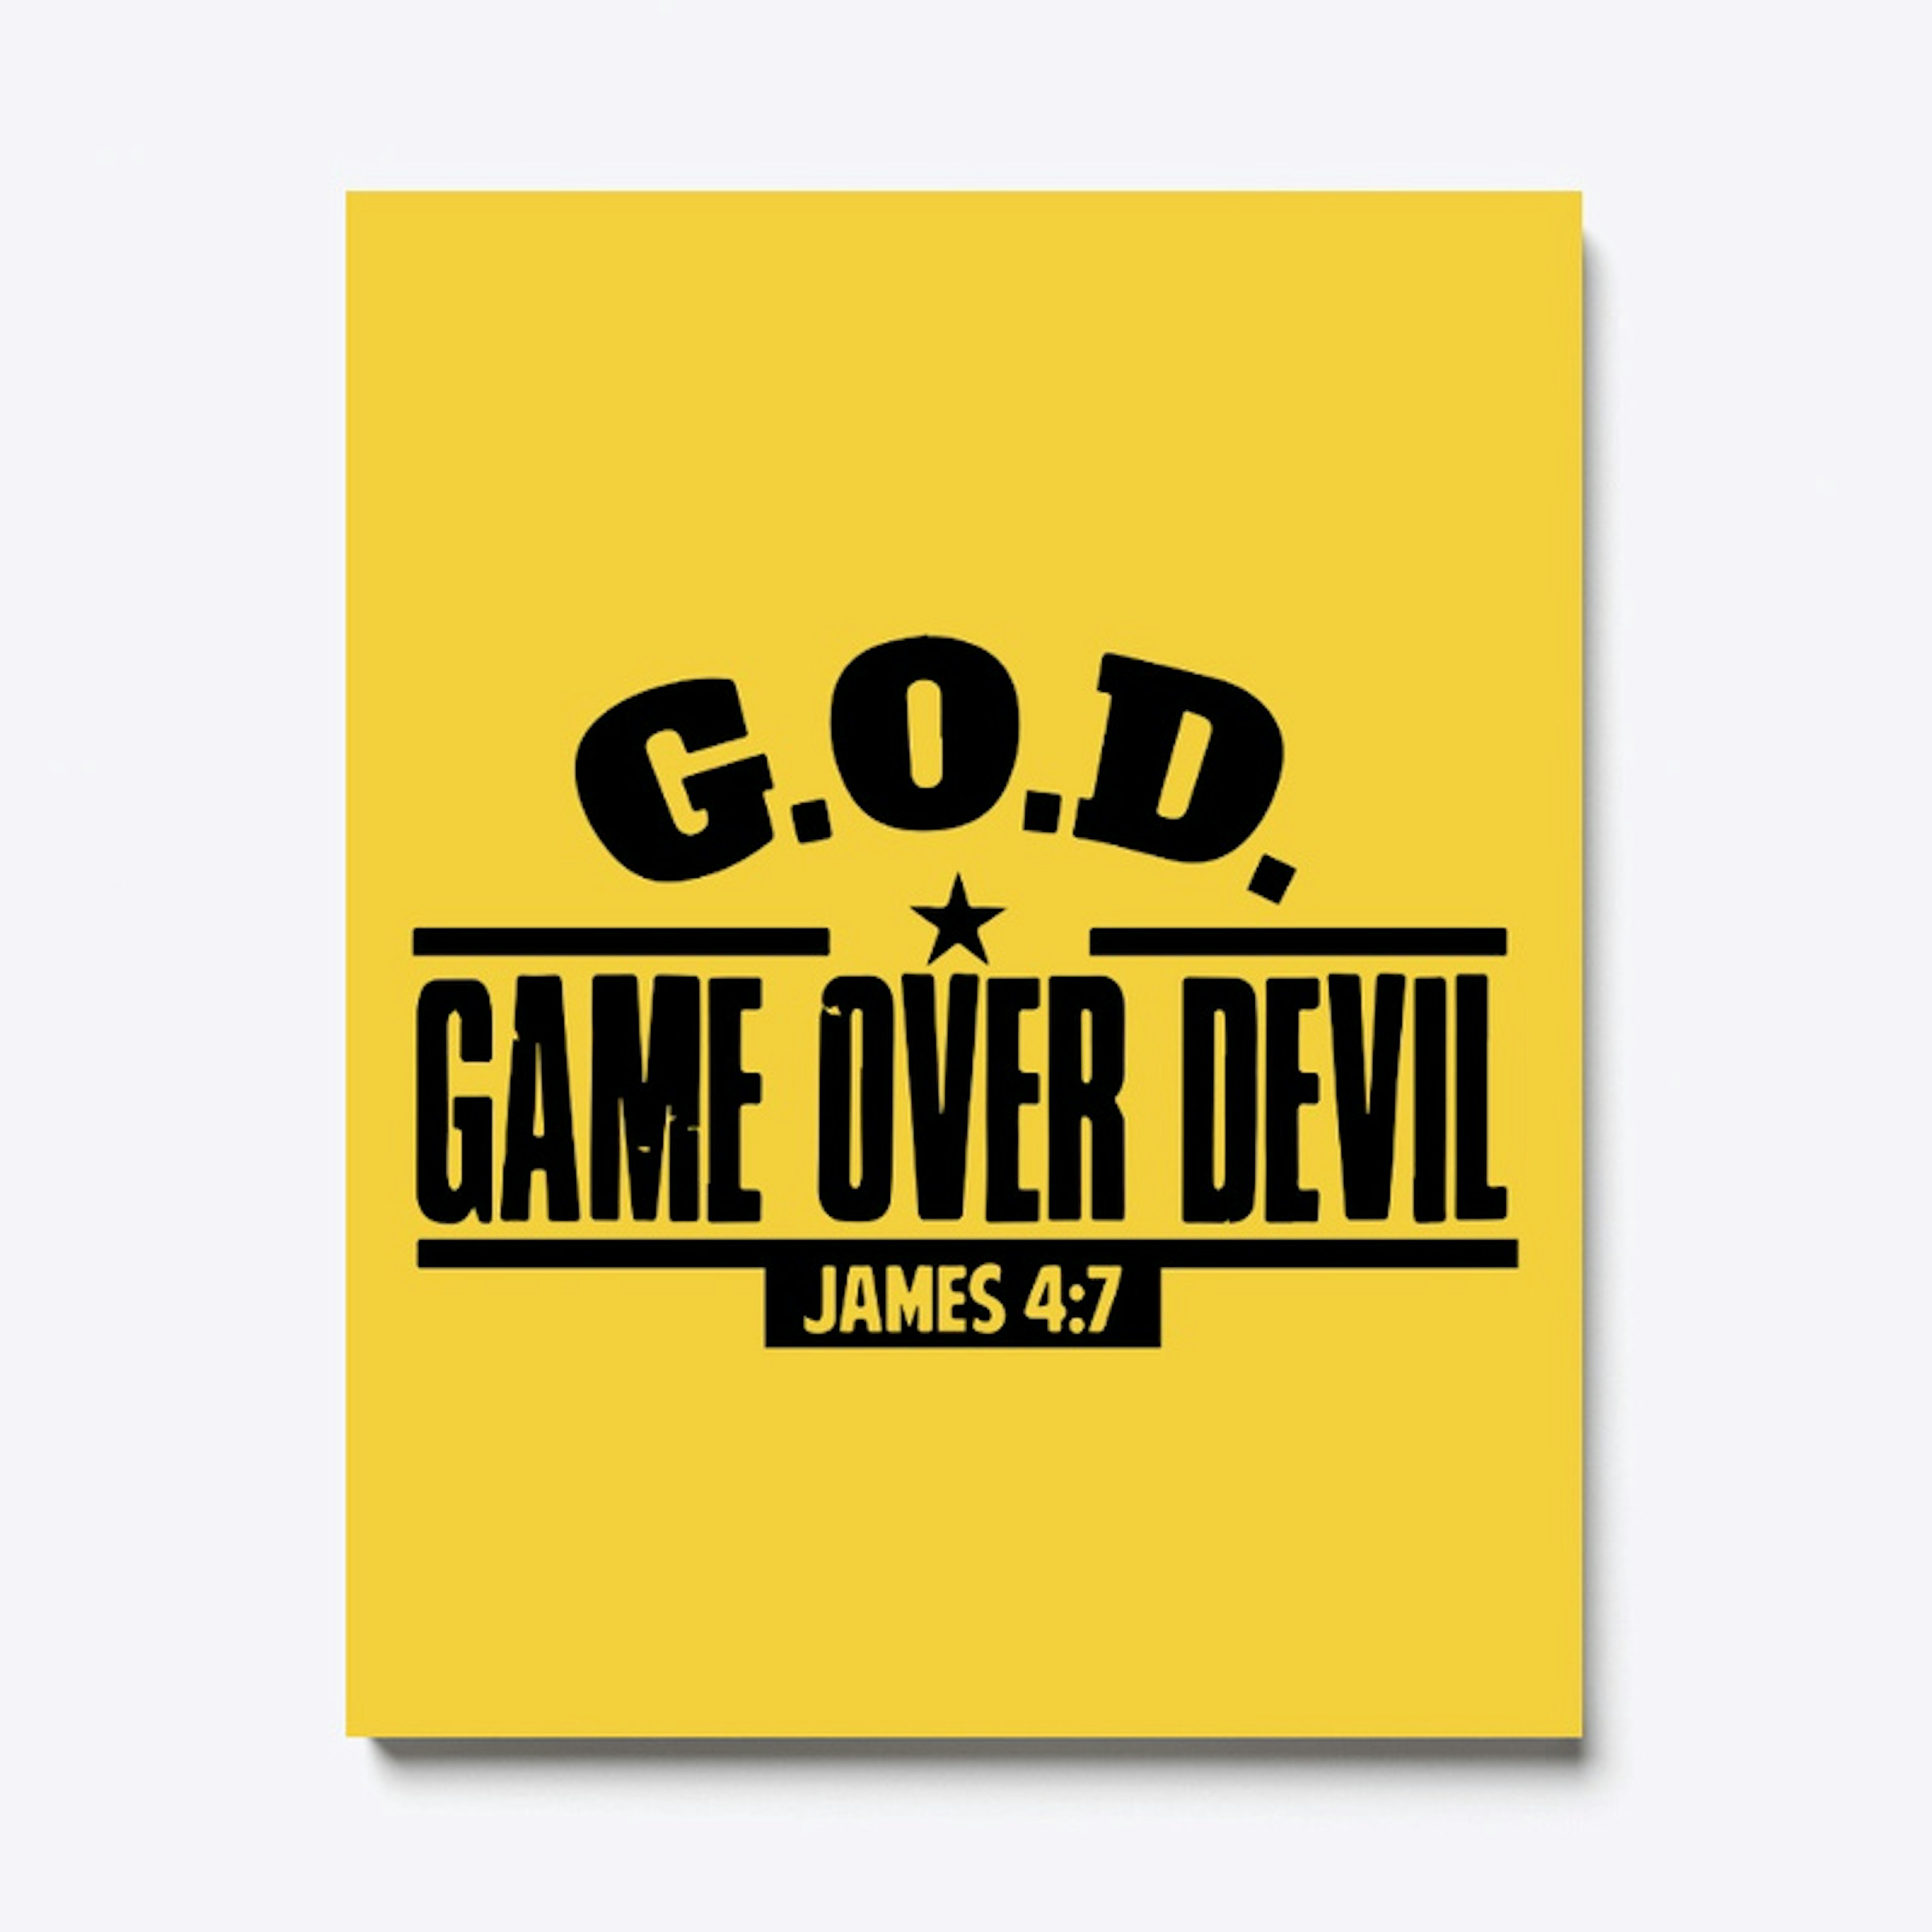 G.O.D Game Over Devil 